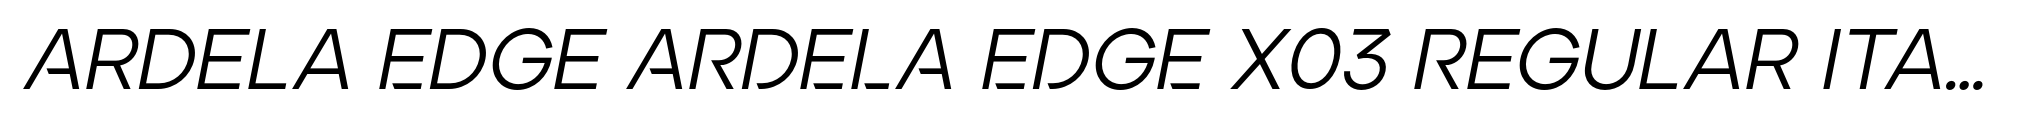 Ardela Edge ARDELA EDGE X03 Regular Italic image